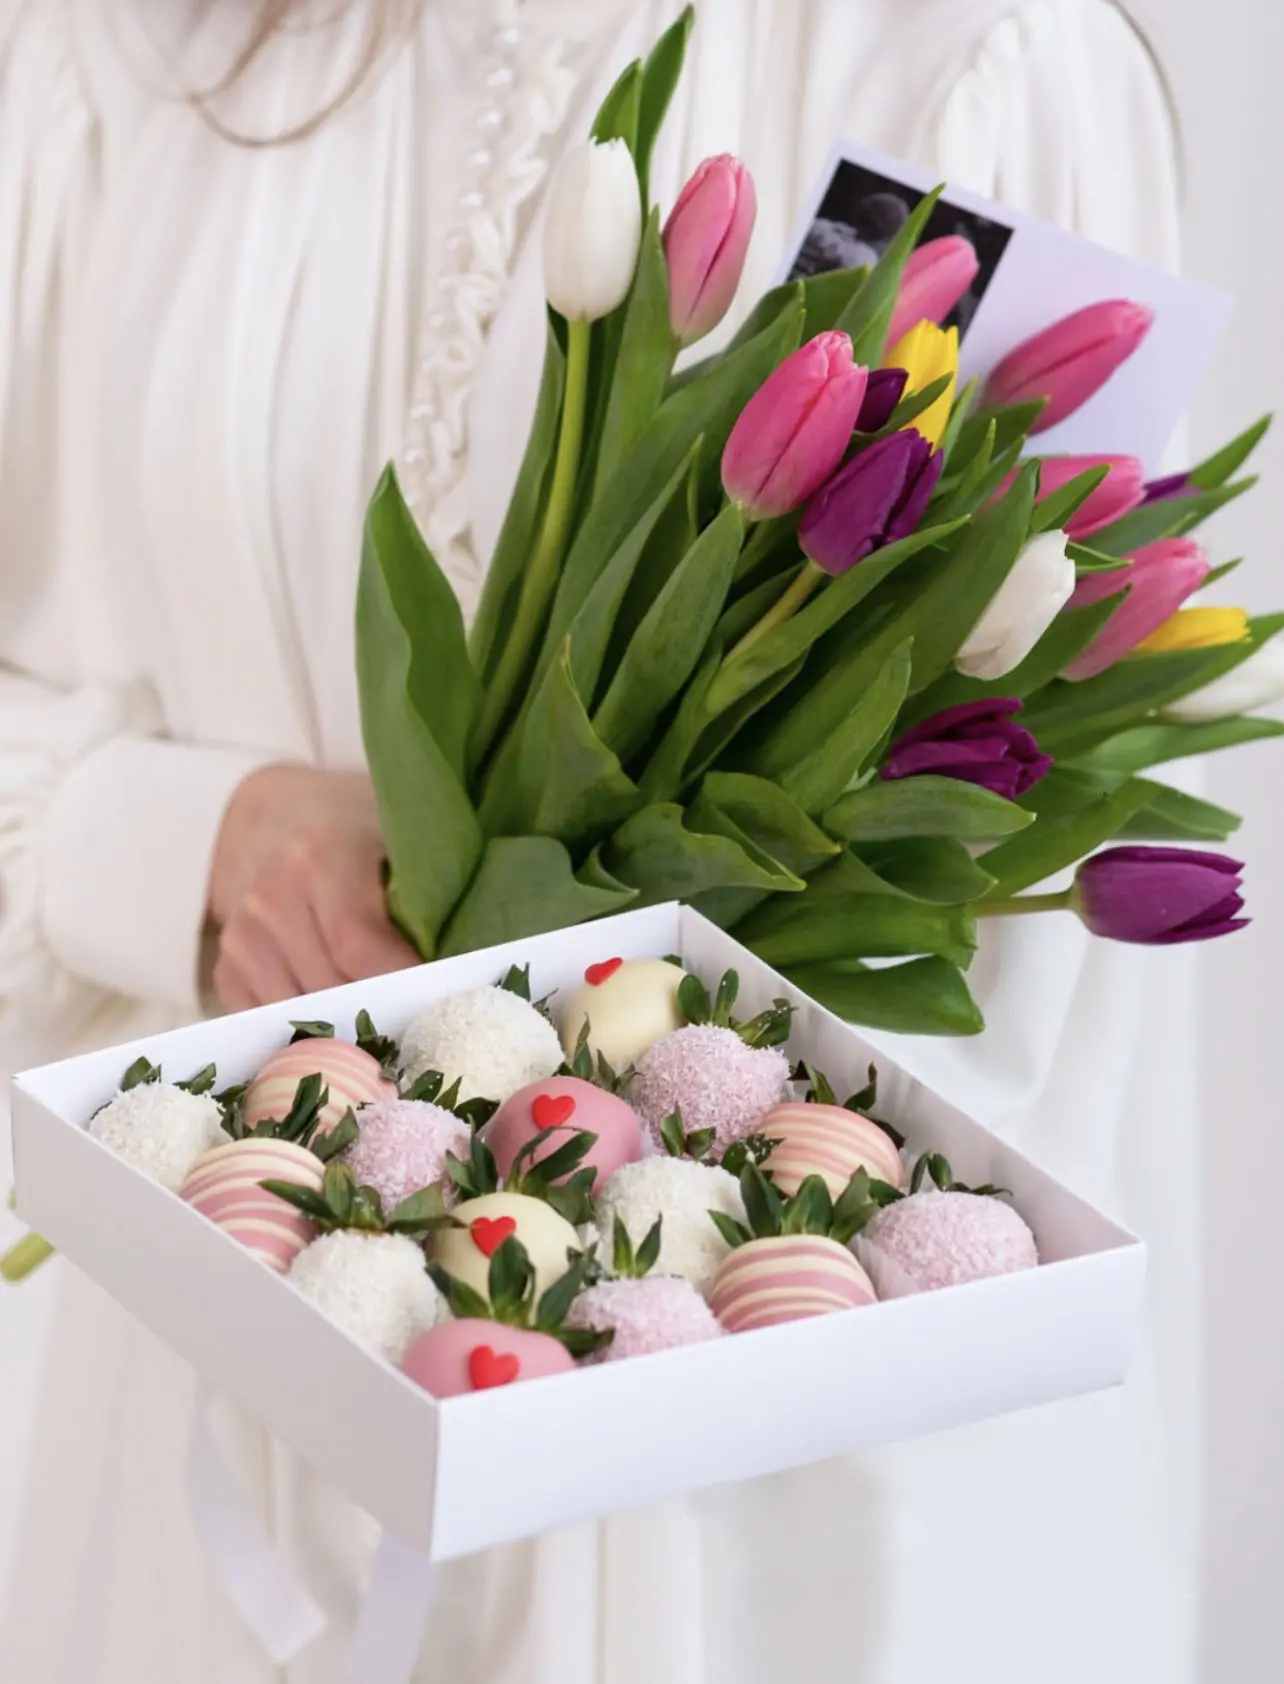 Клубника в шоколаде "Дуо набор с тюльпанами" 4 500 руб.